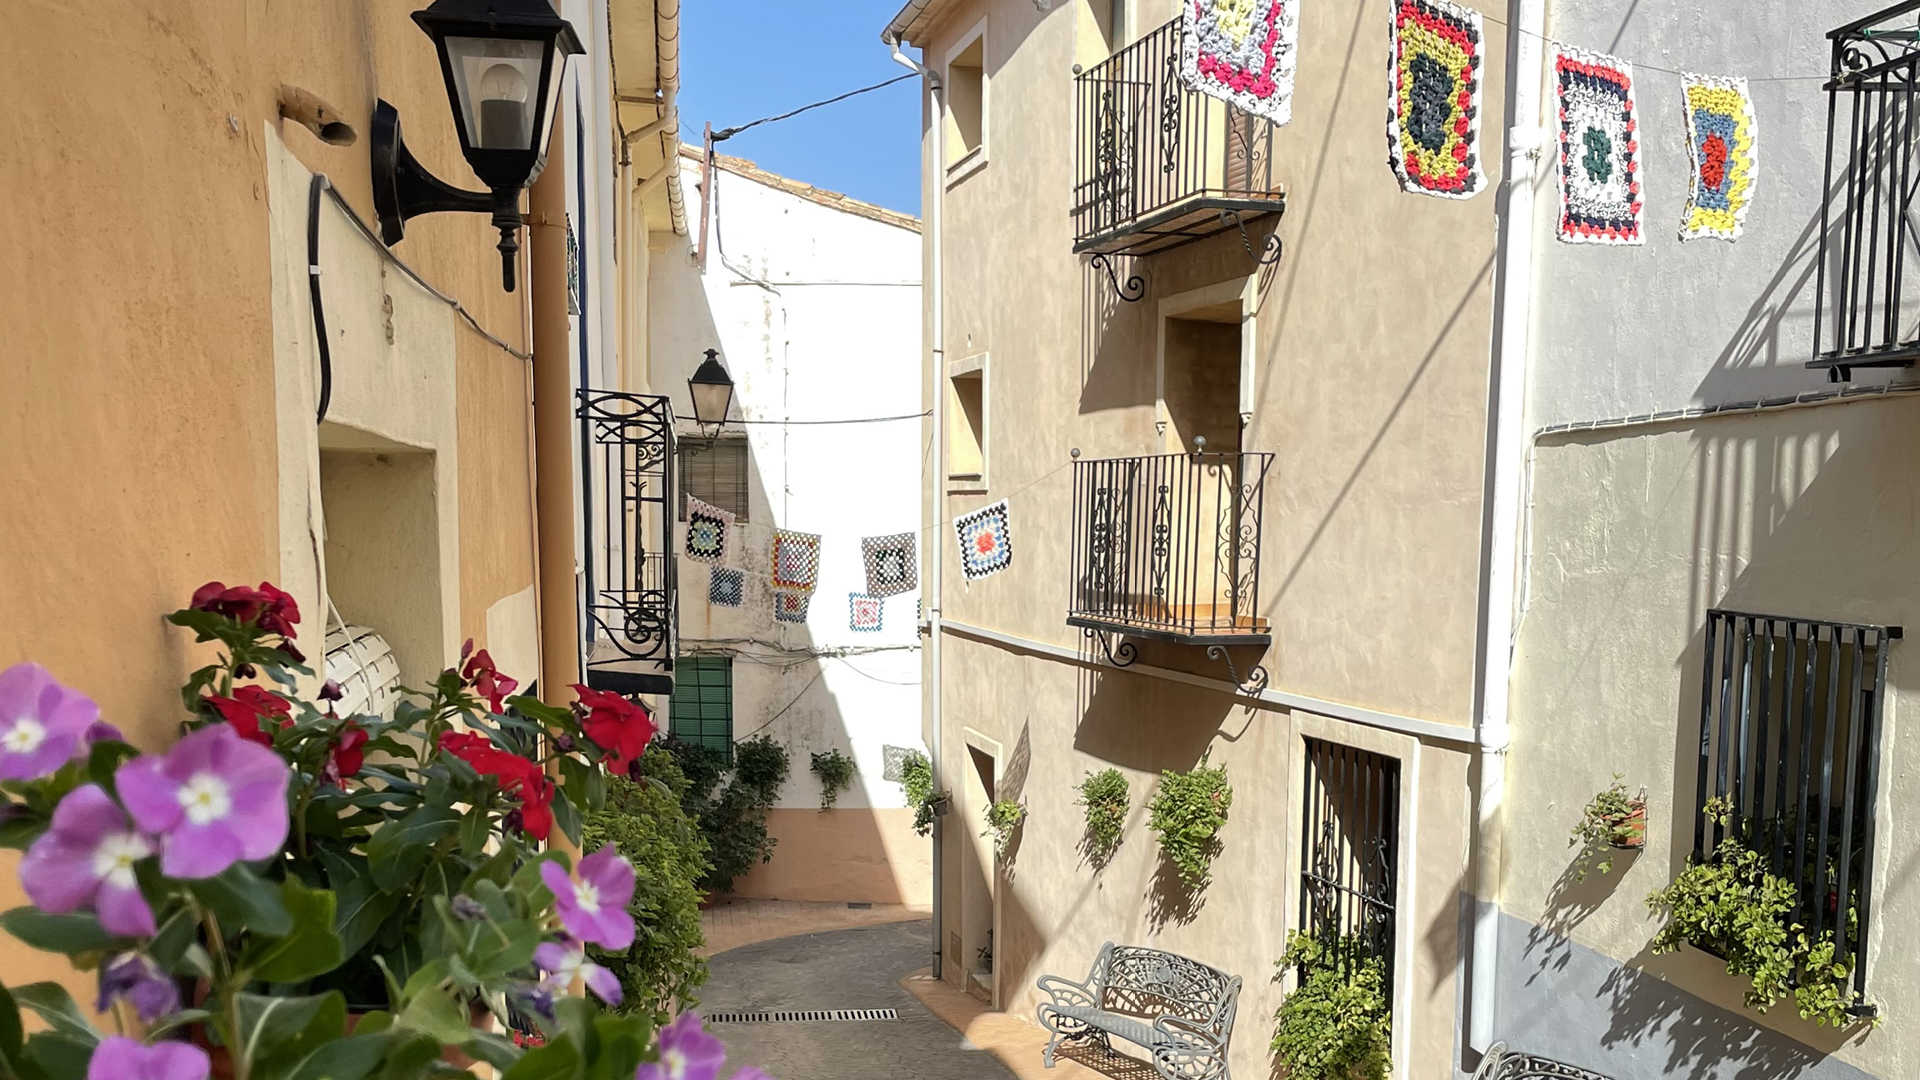 detall del carrer Salamanca a Fageca, amb les banderoles de 